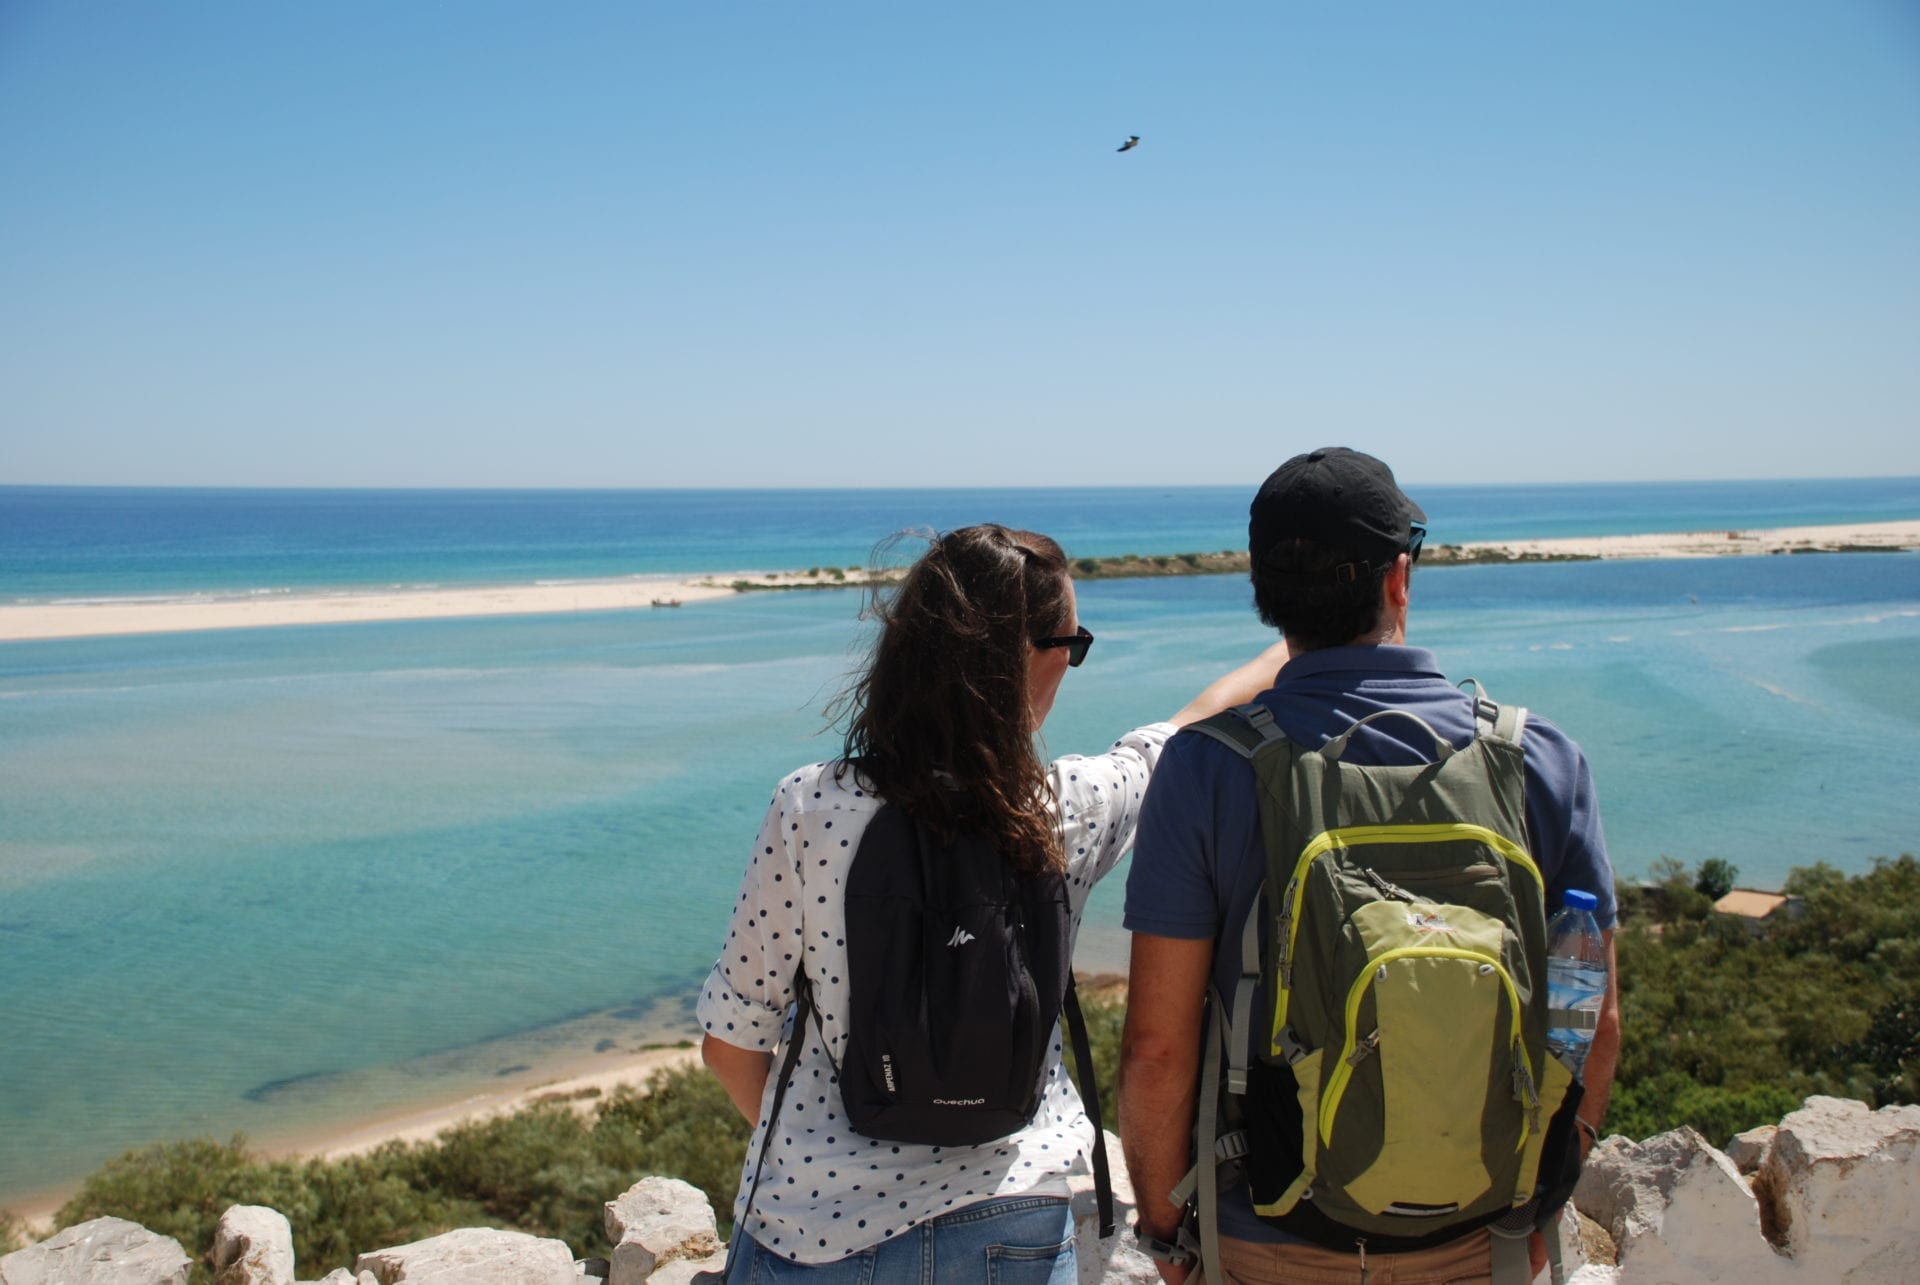 Naturplätze an der Algarve: Naturparks, Reservate und schöne Orte